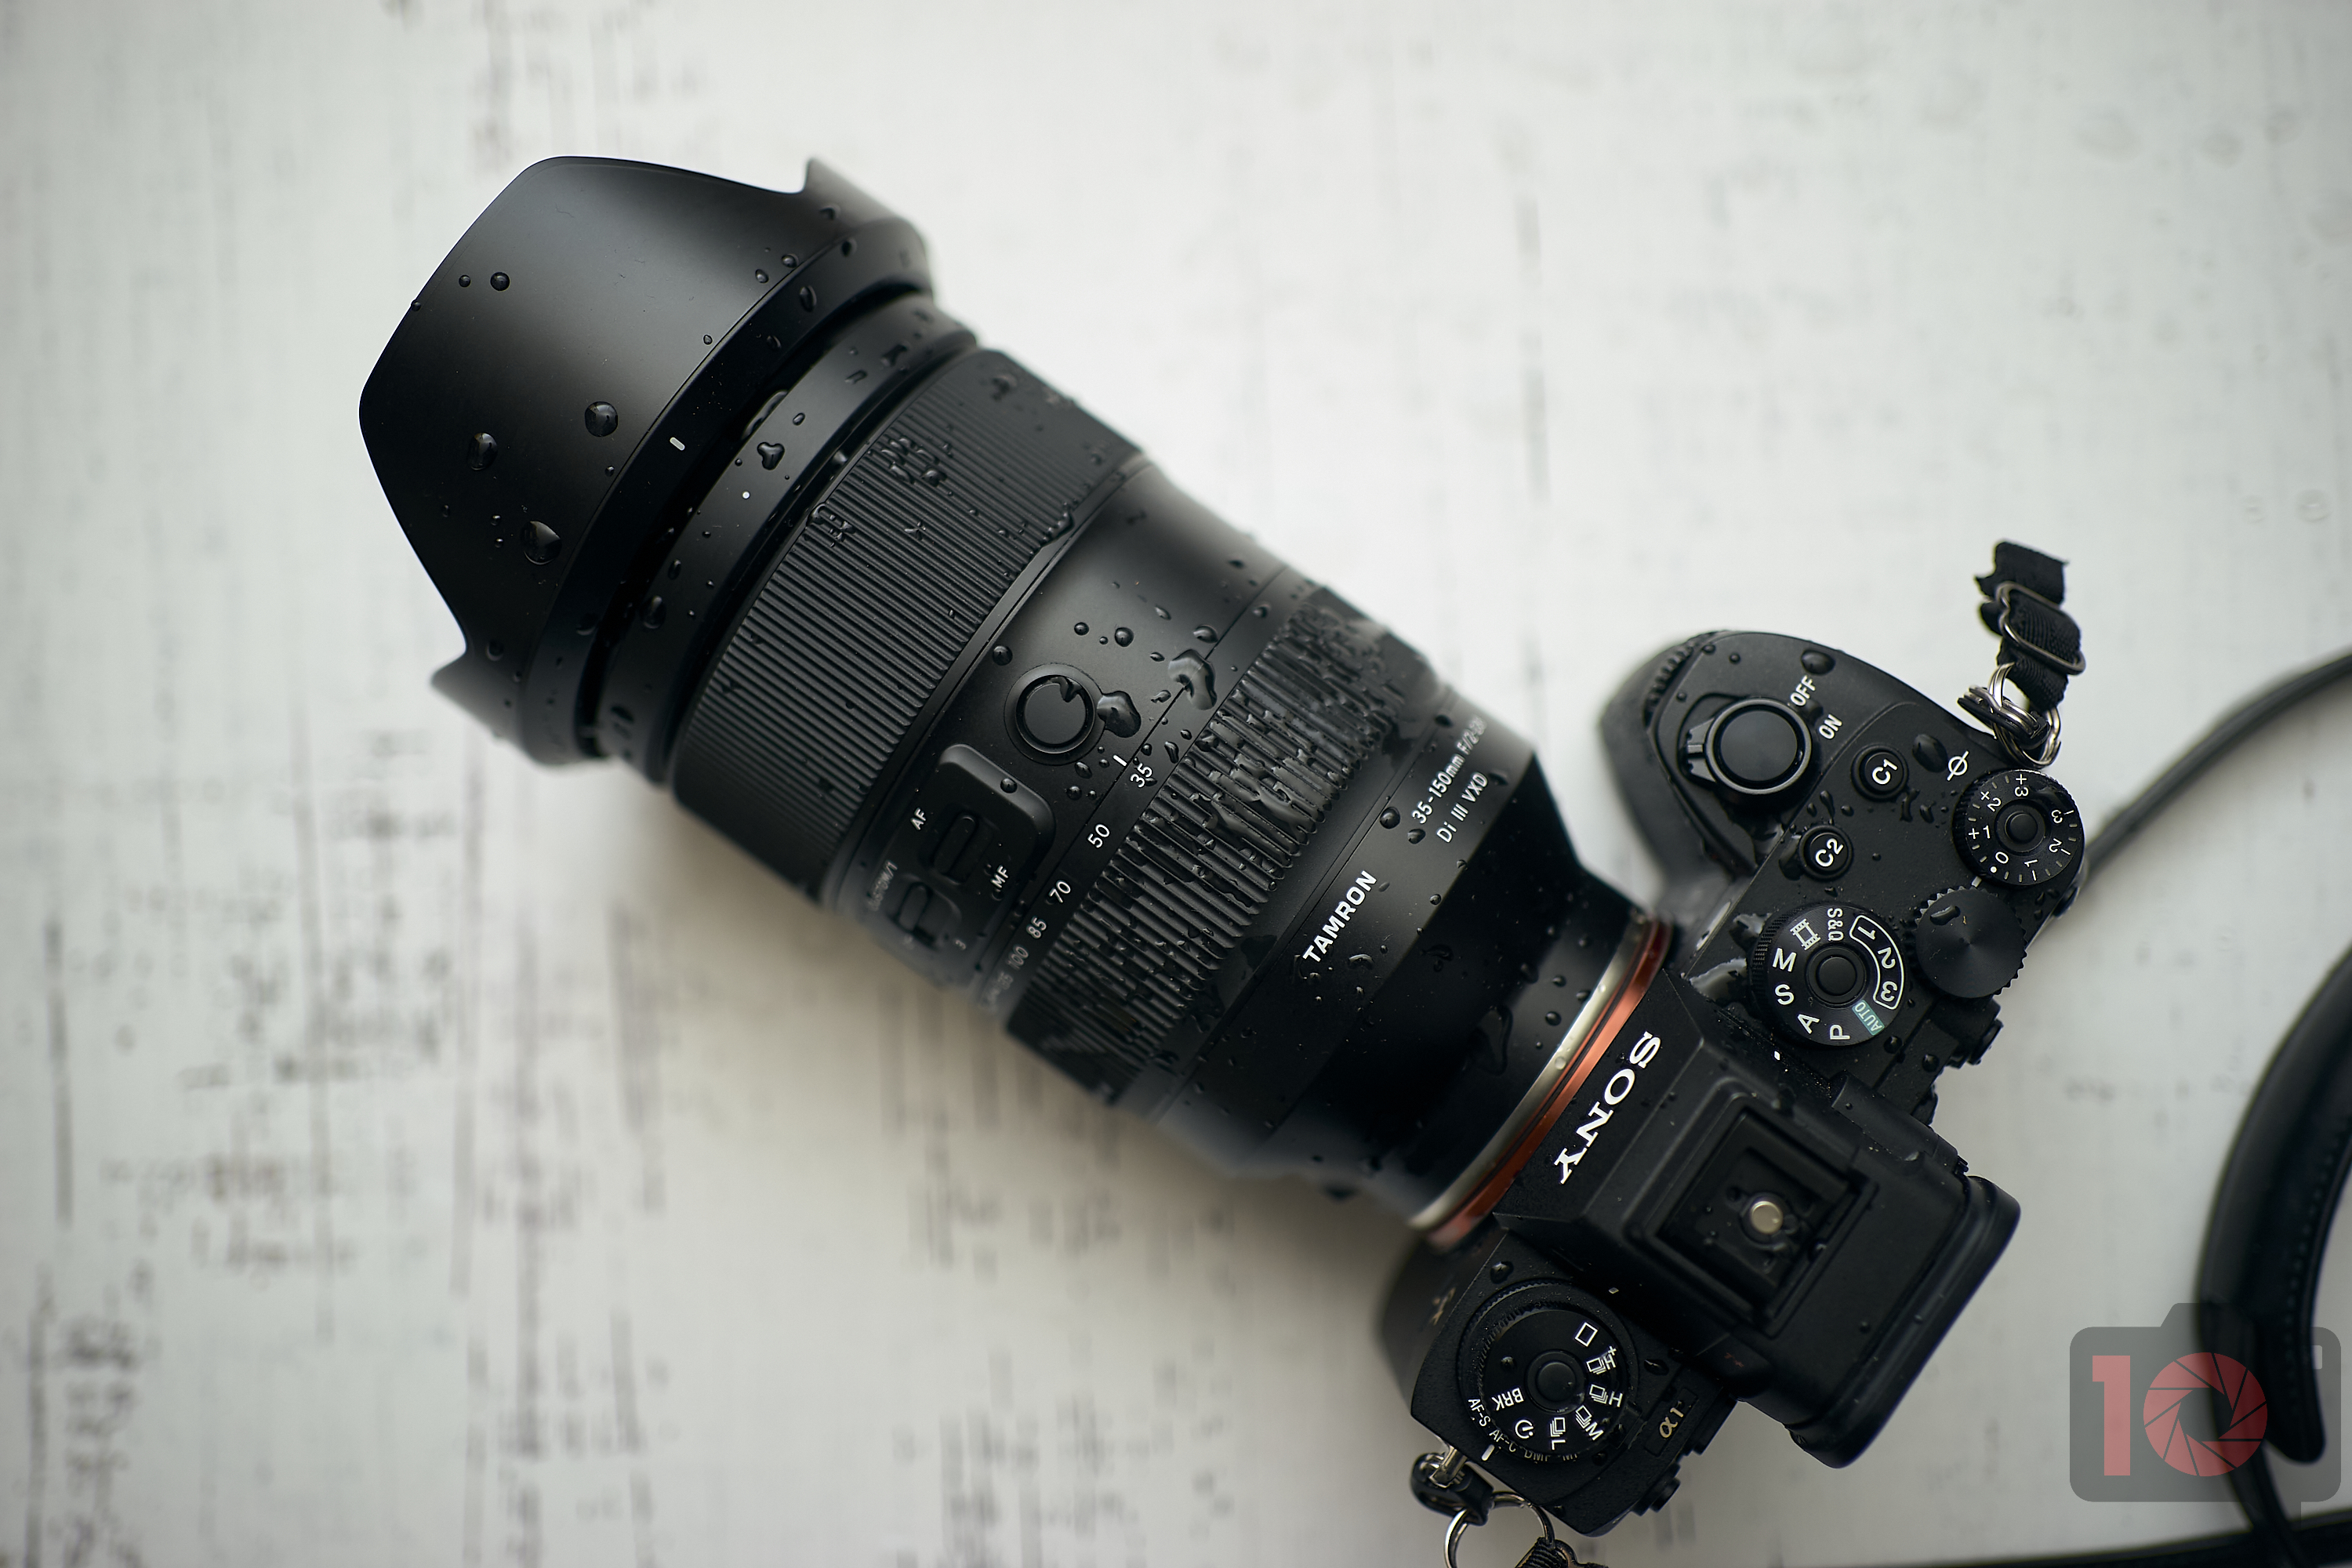 jurk Molester Draad The Best Portrait Lenses for Sony E Mount Cameras We Love